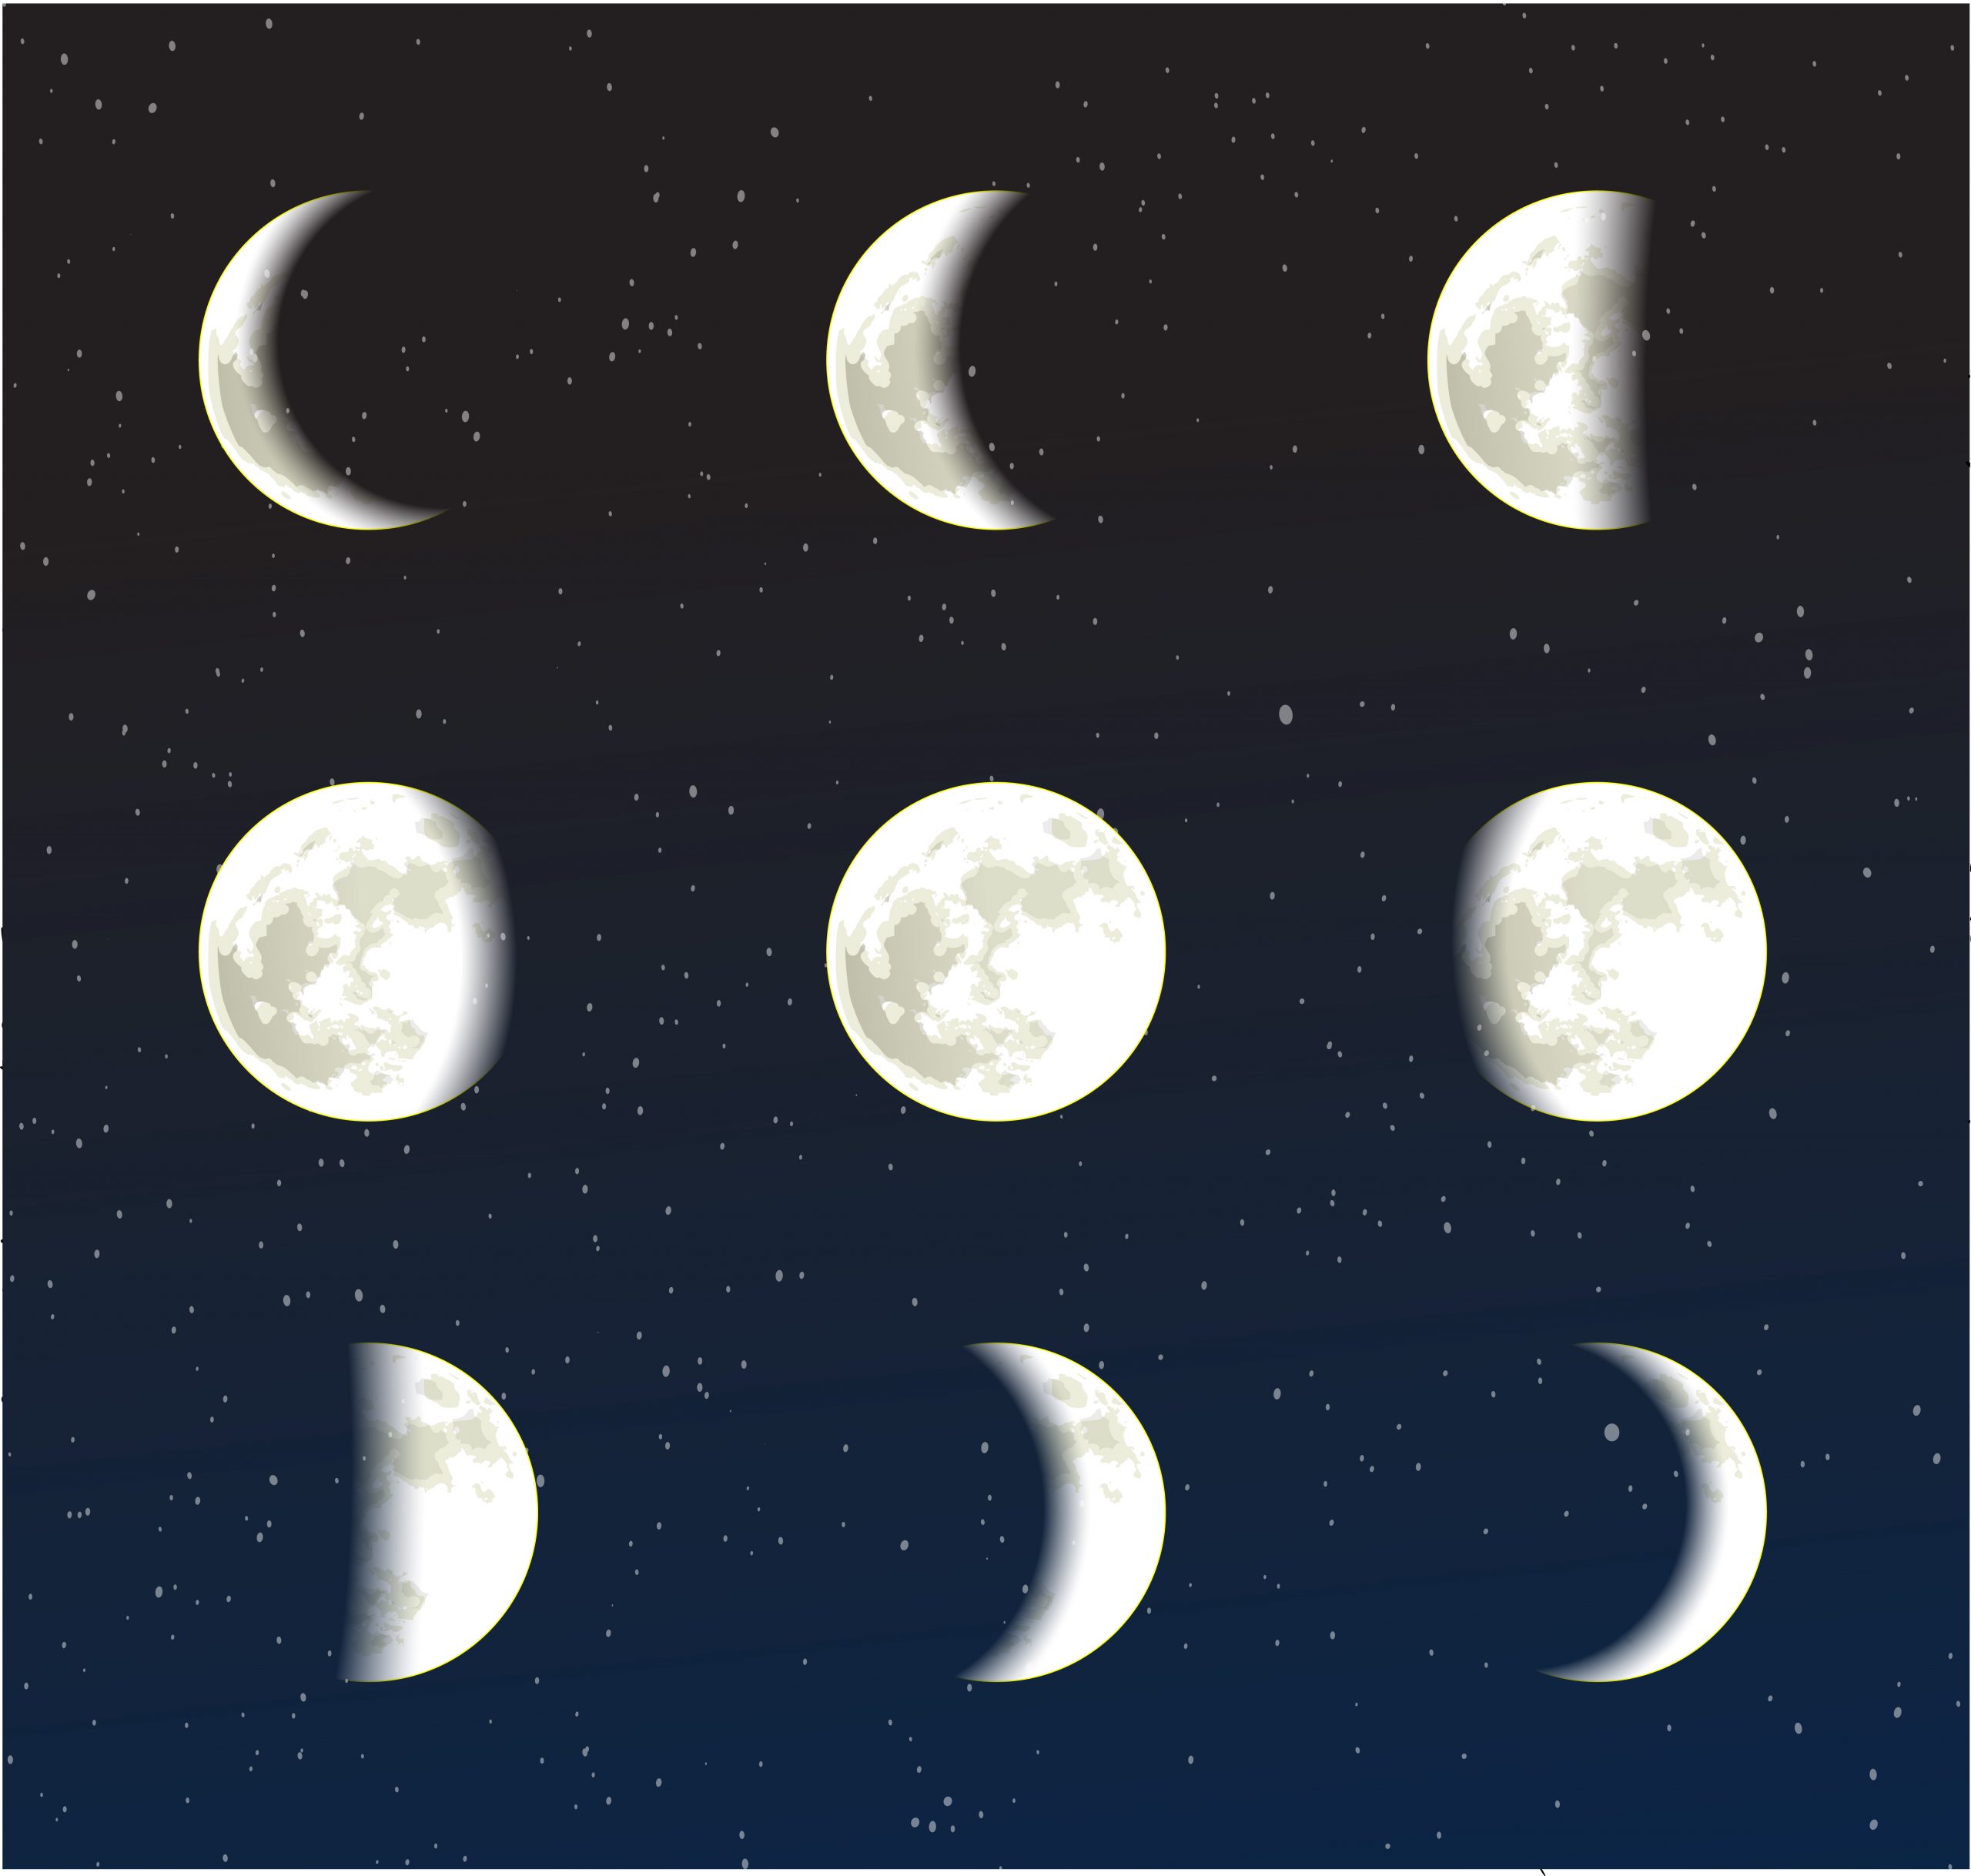 Astrologia fases da lua e as relações amorosas e profissionais